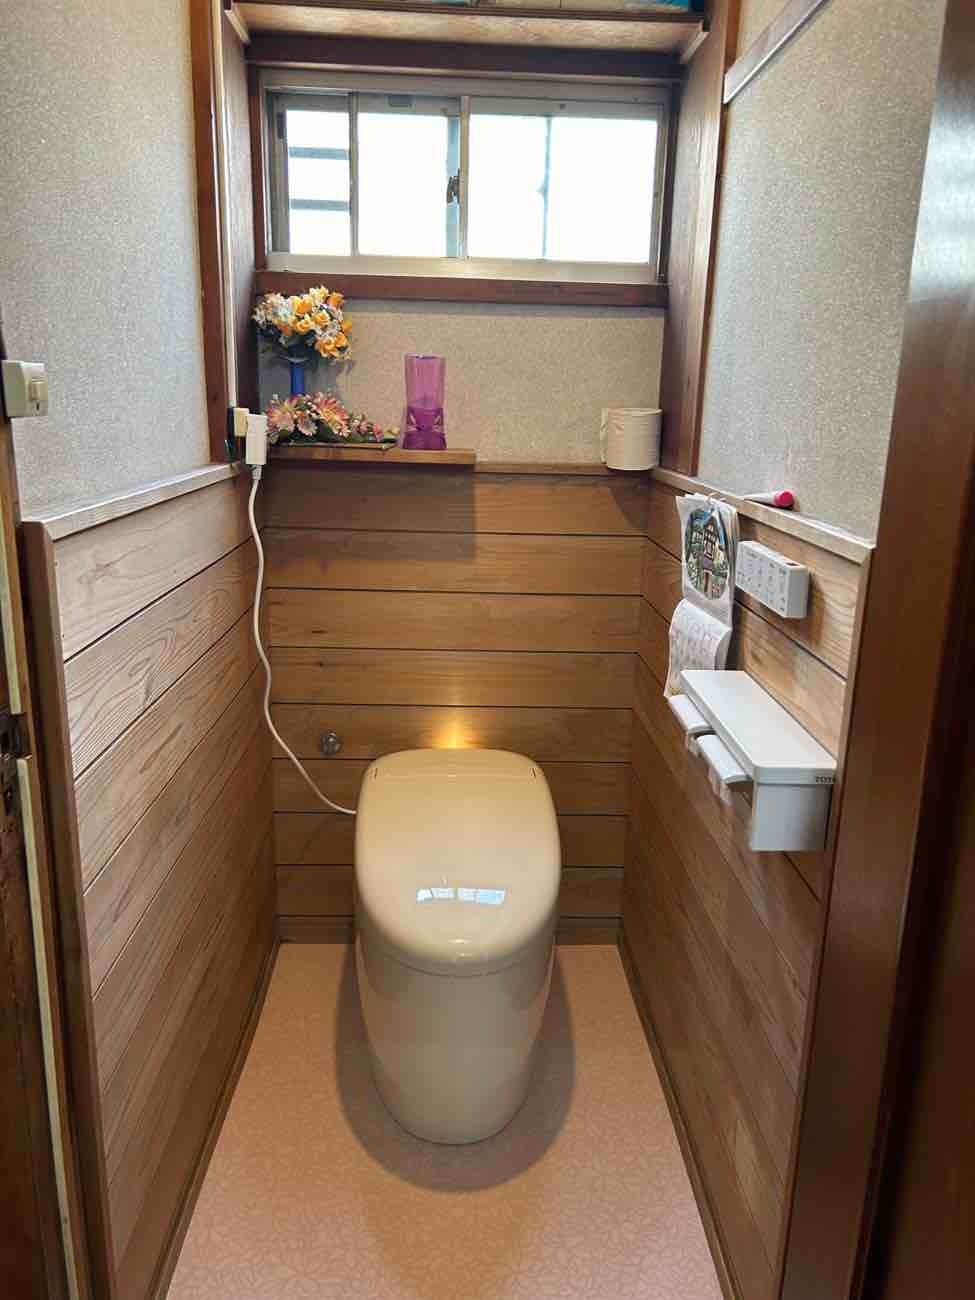 【埼玉県三郷市】T様邸トイレ交換リフォーム工事が完了しました。TOTO ネオレスト 画像